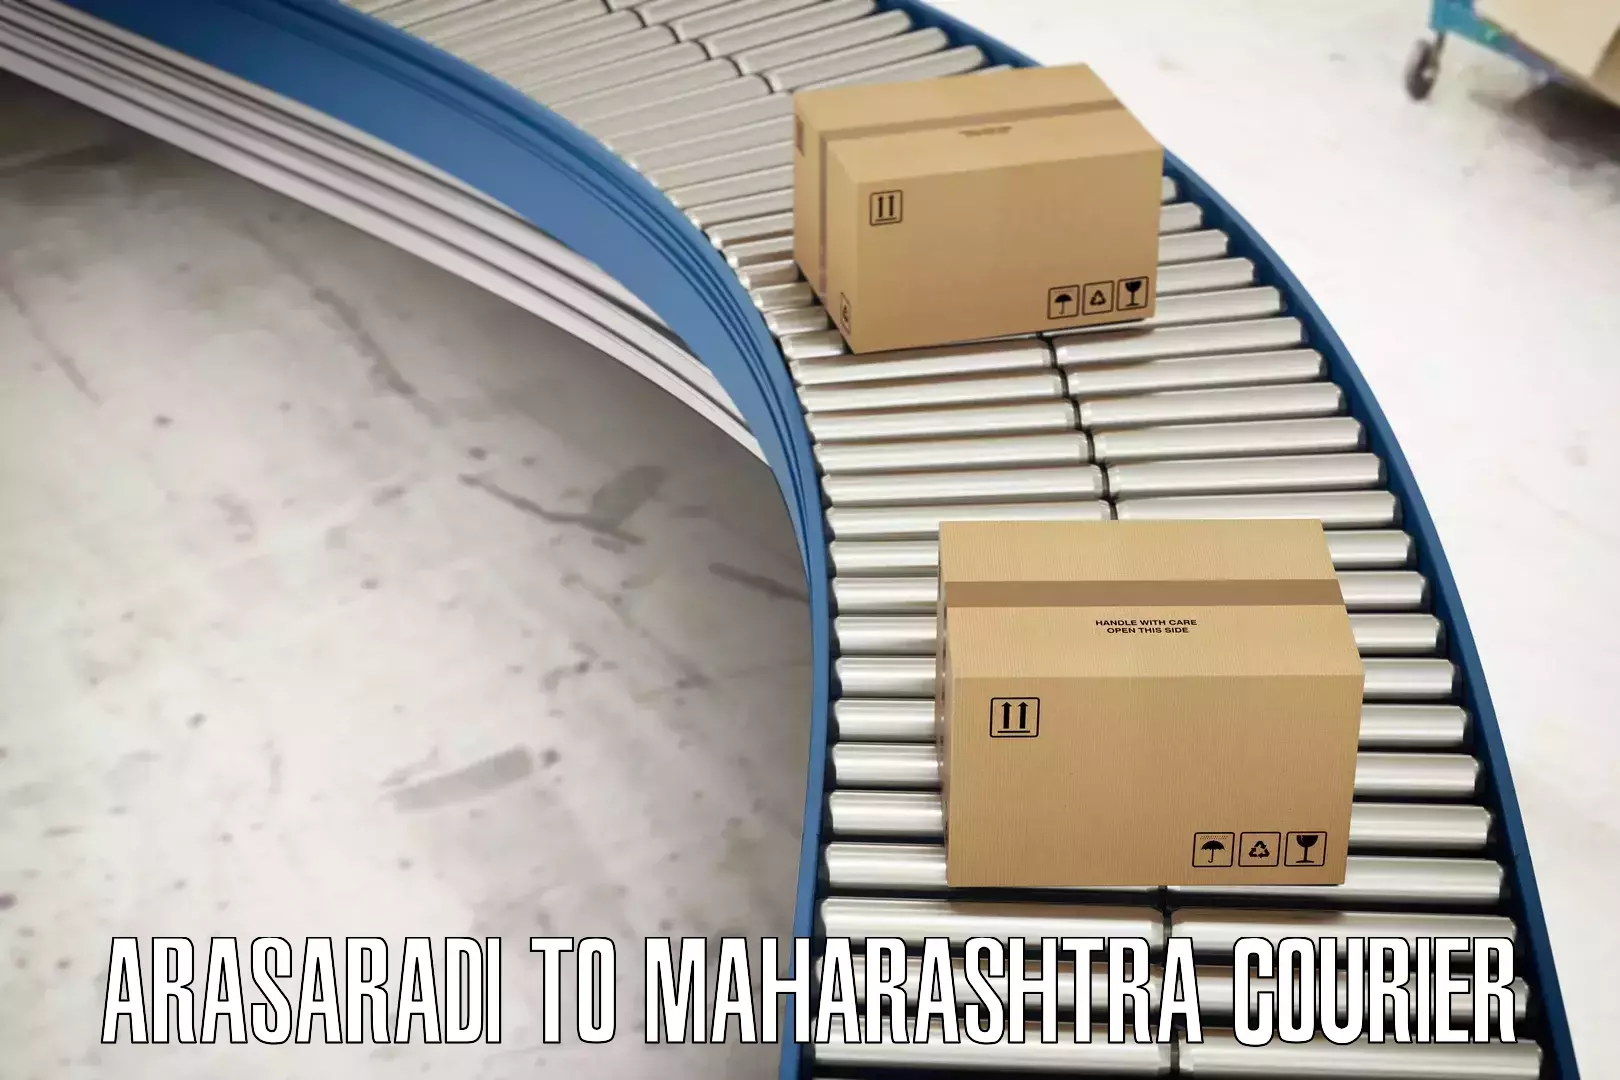 Full-service courier options Arasaradi to Maharashtra